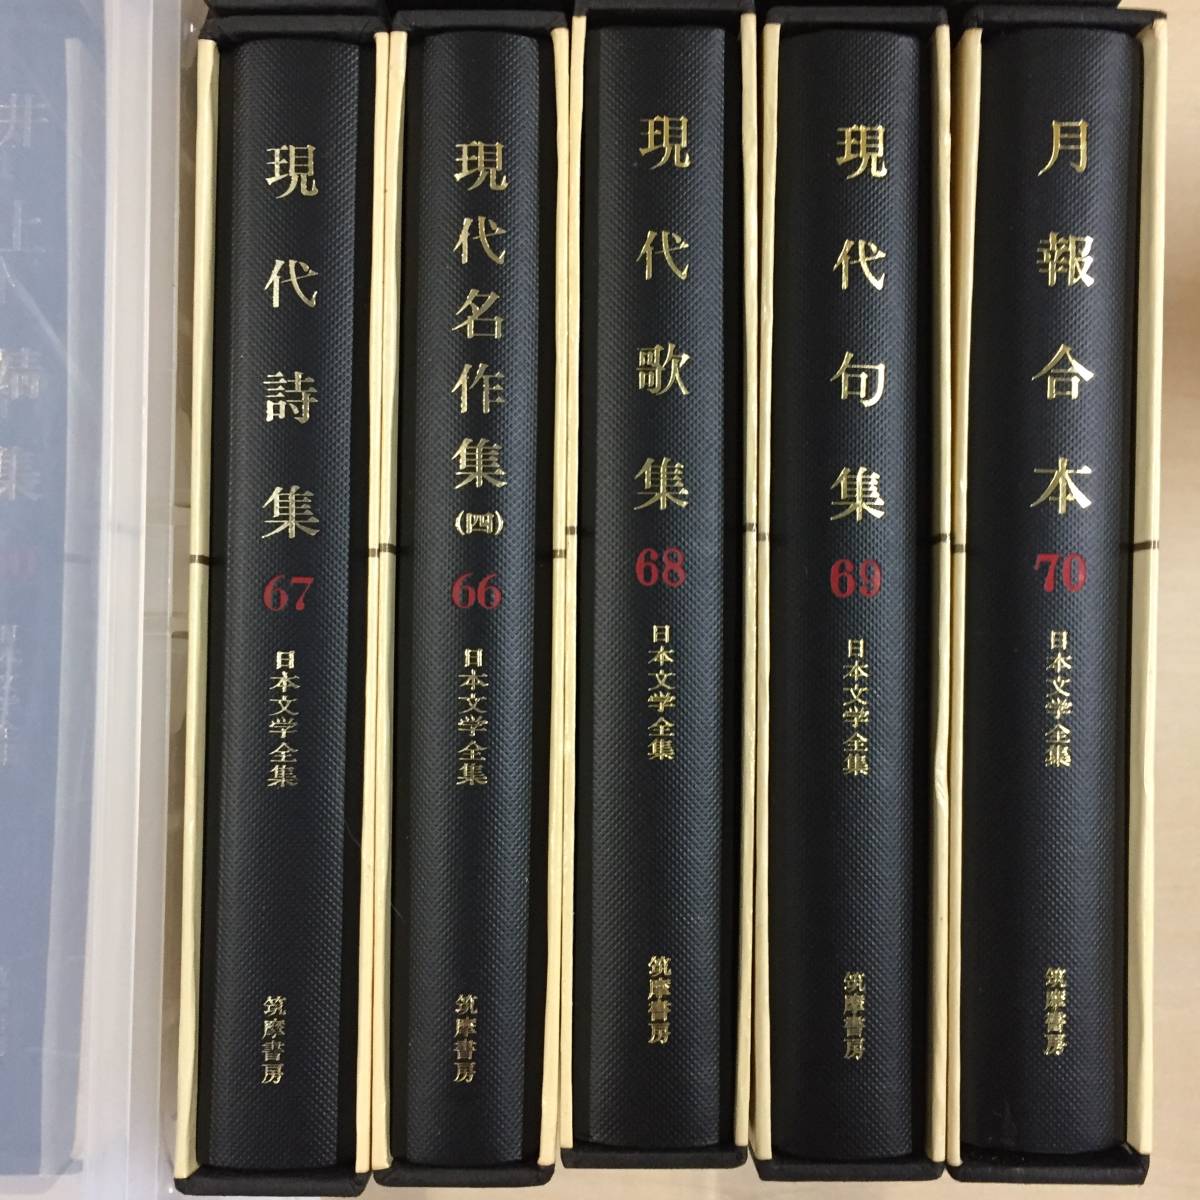 豪華版 日本文学全集 全29巻 文学 | www.vinoflix.com